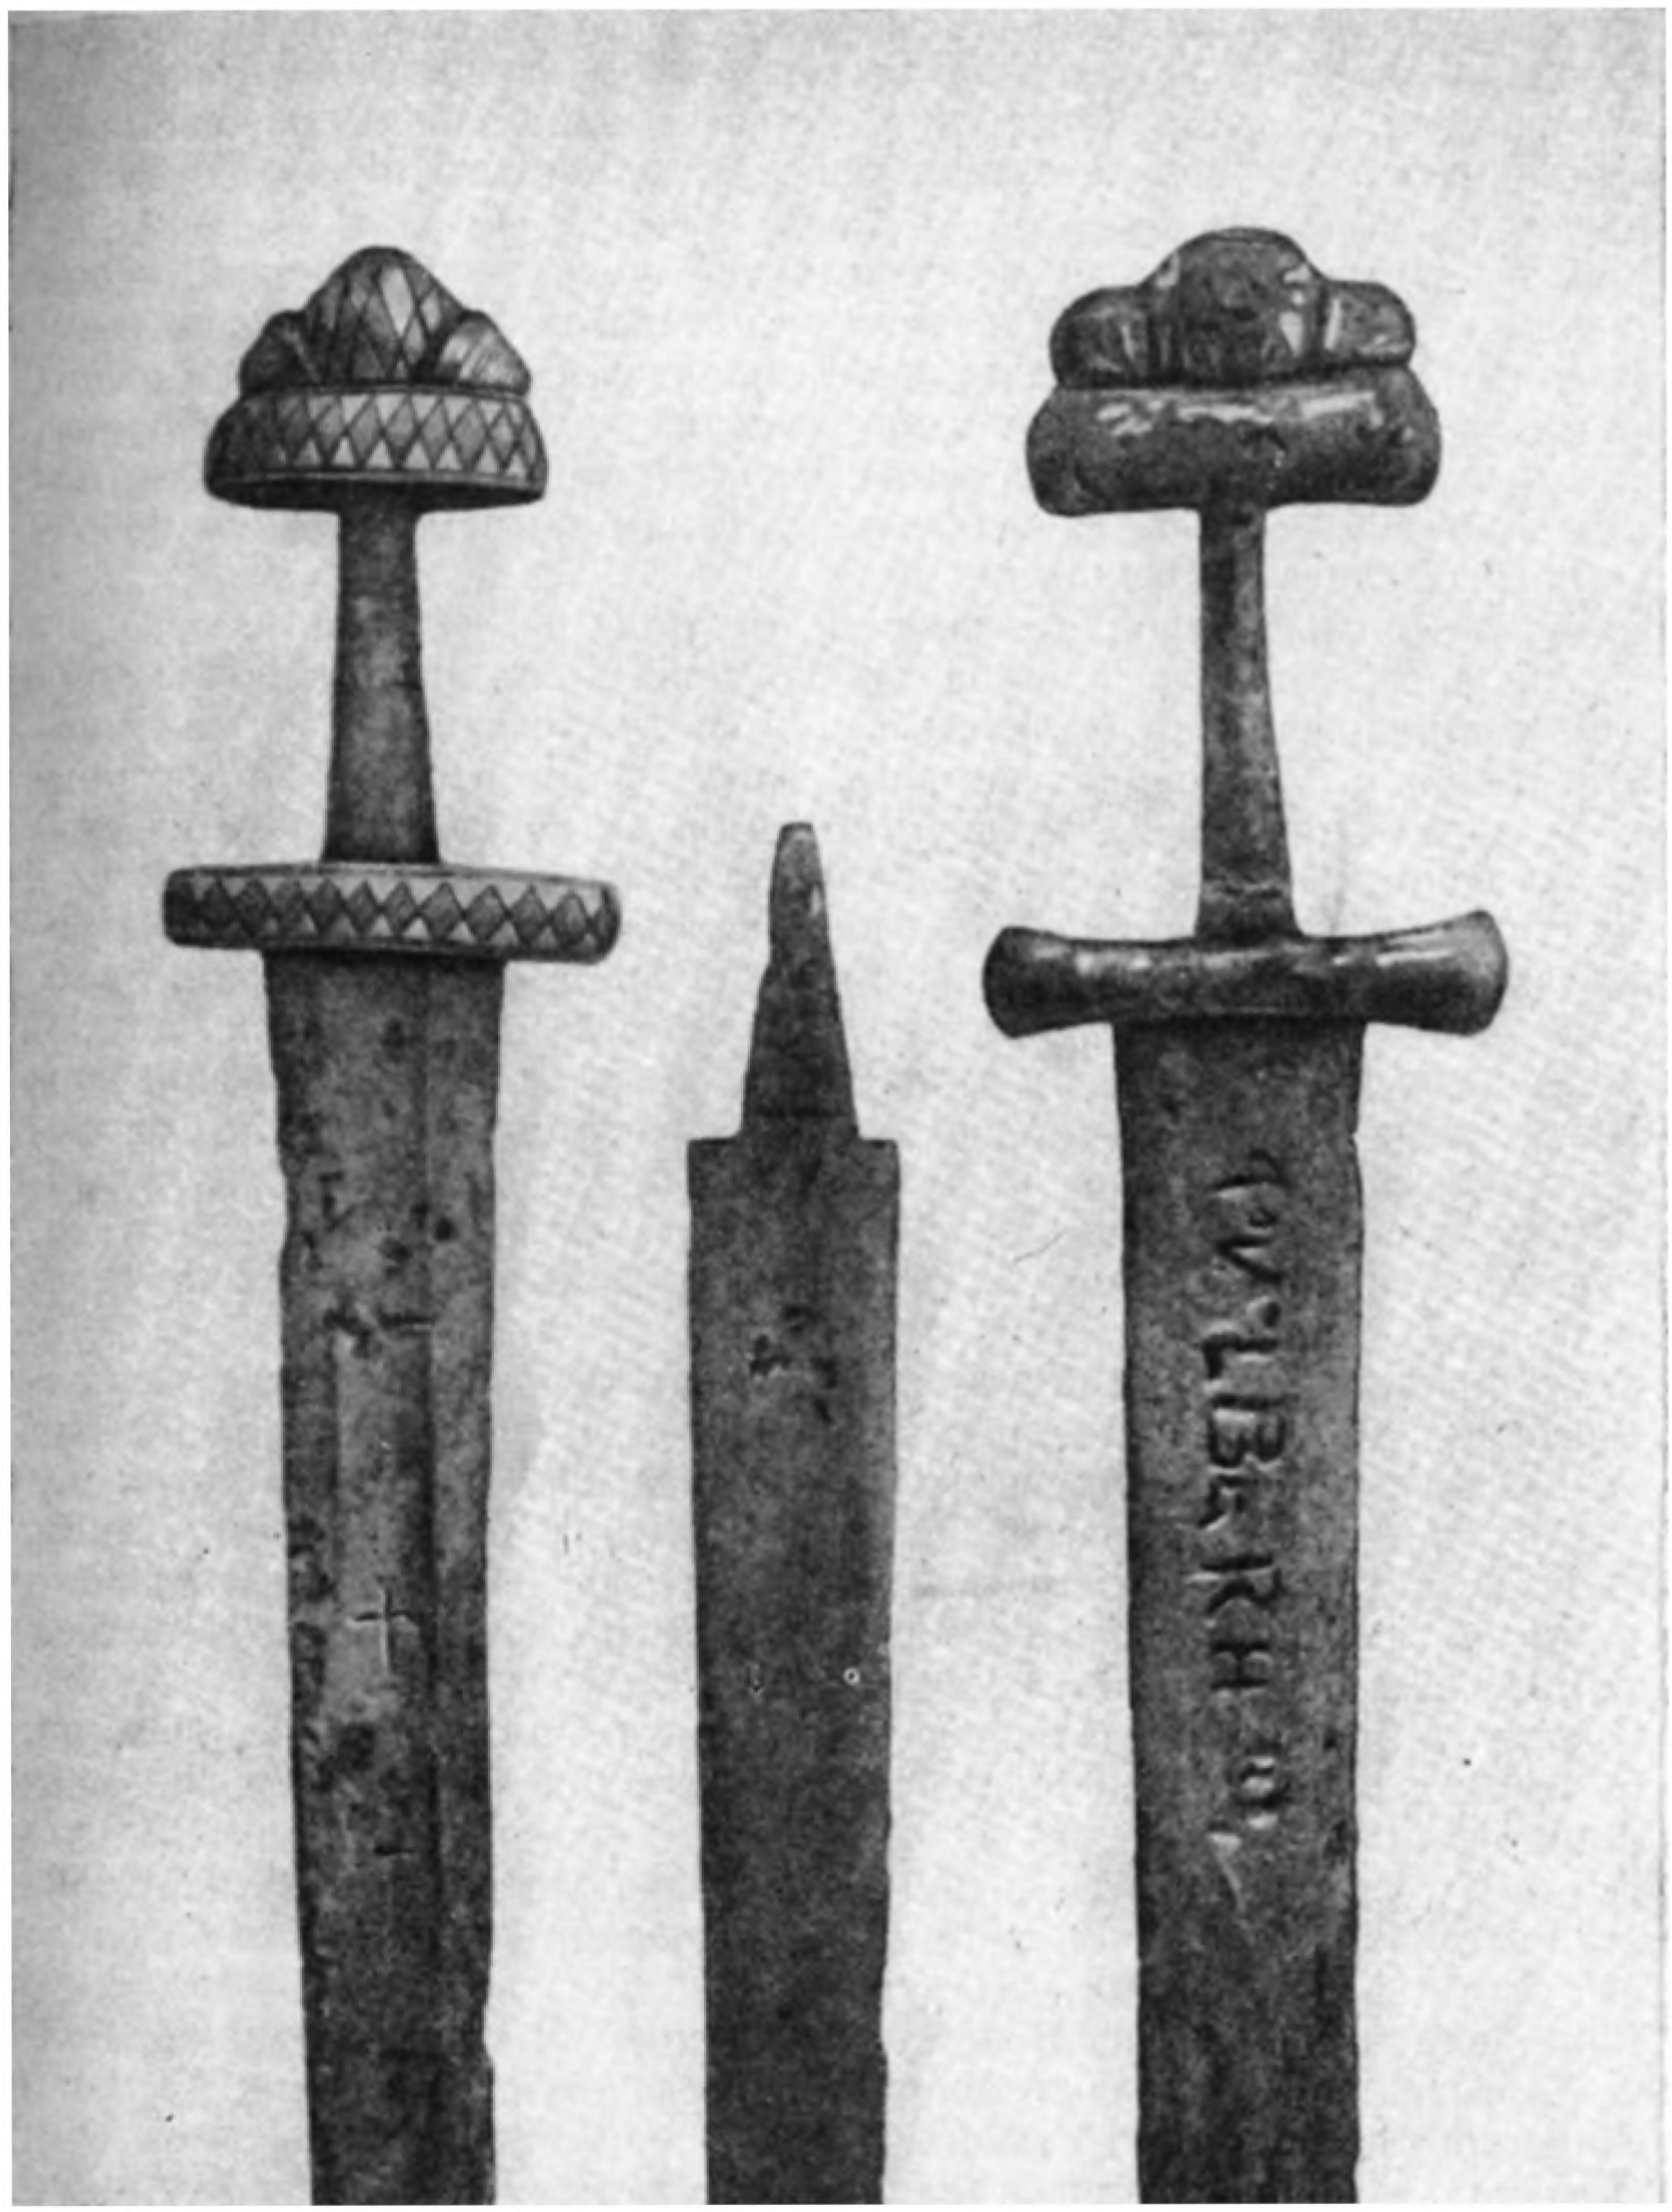 Мечи середины X в., найденные в днепровских порогах на месте гибели князя Святослава и его дружин